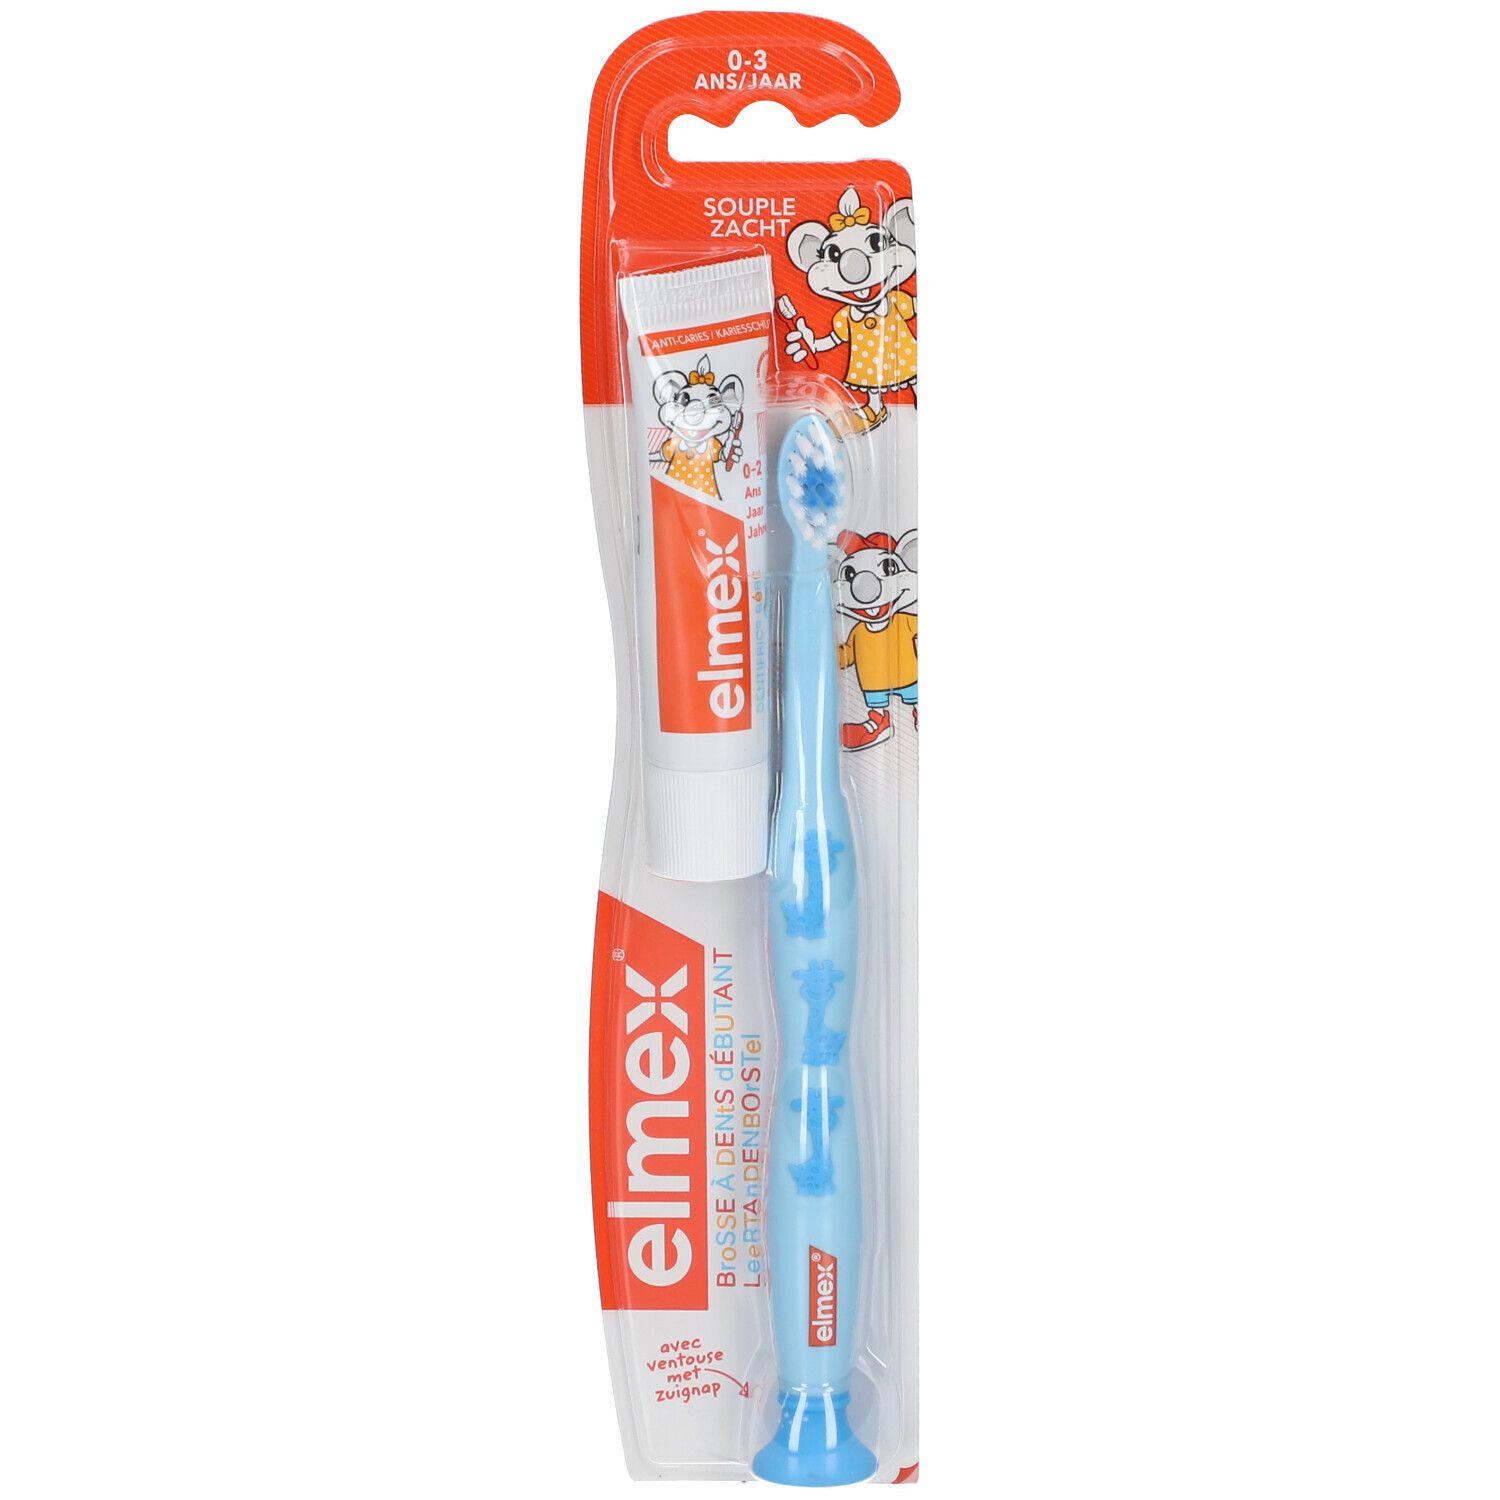 Image of elmex® Lernzahlbürste für Kinder 0-3 Jahren + 12 ml Junior Zahnpasta